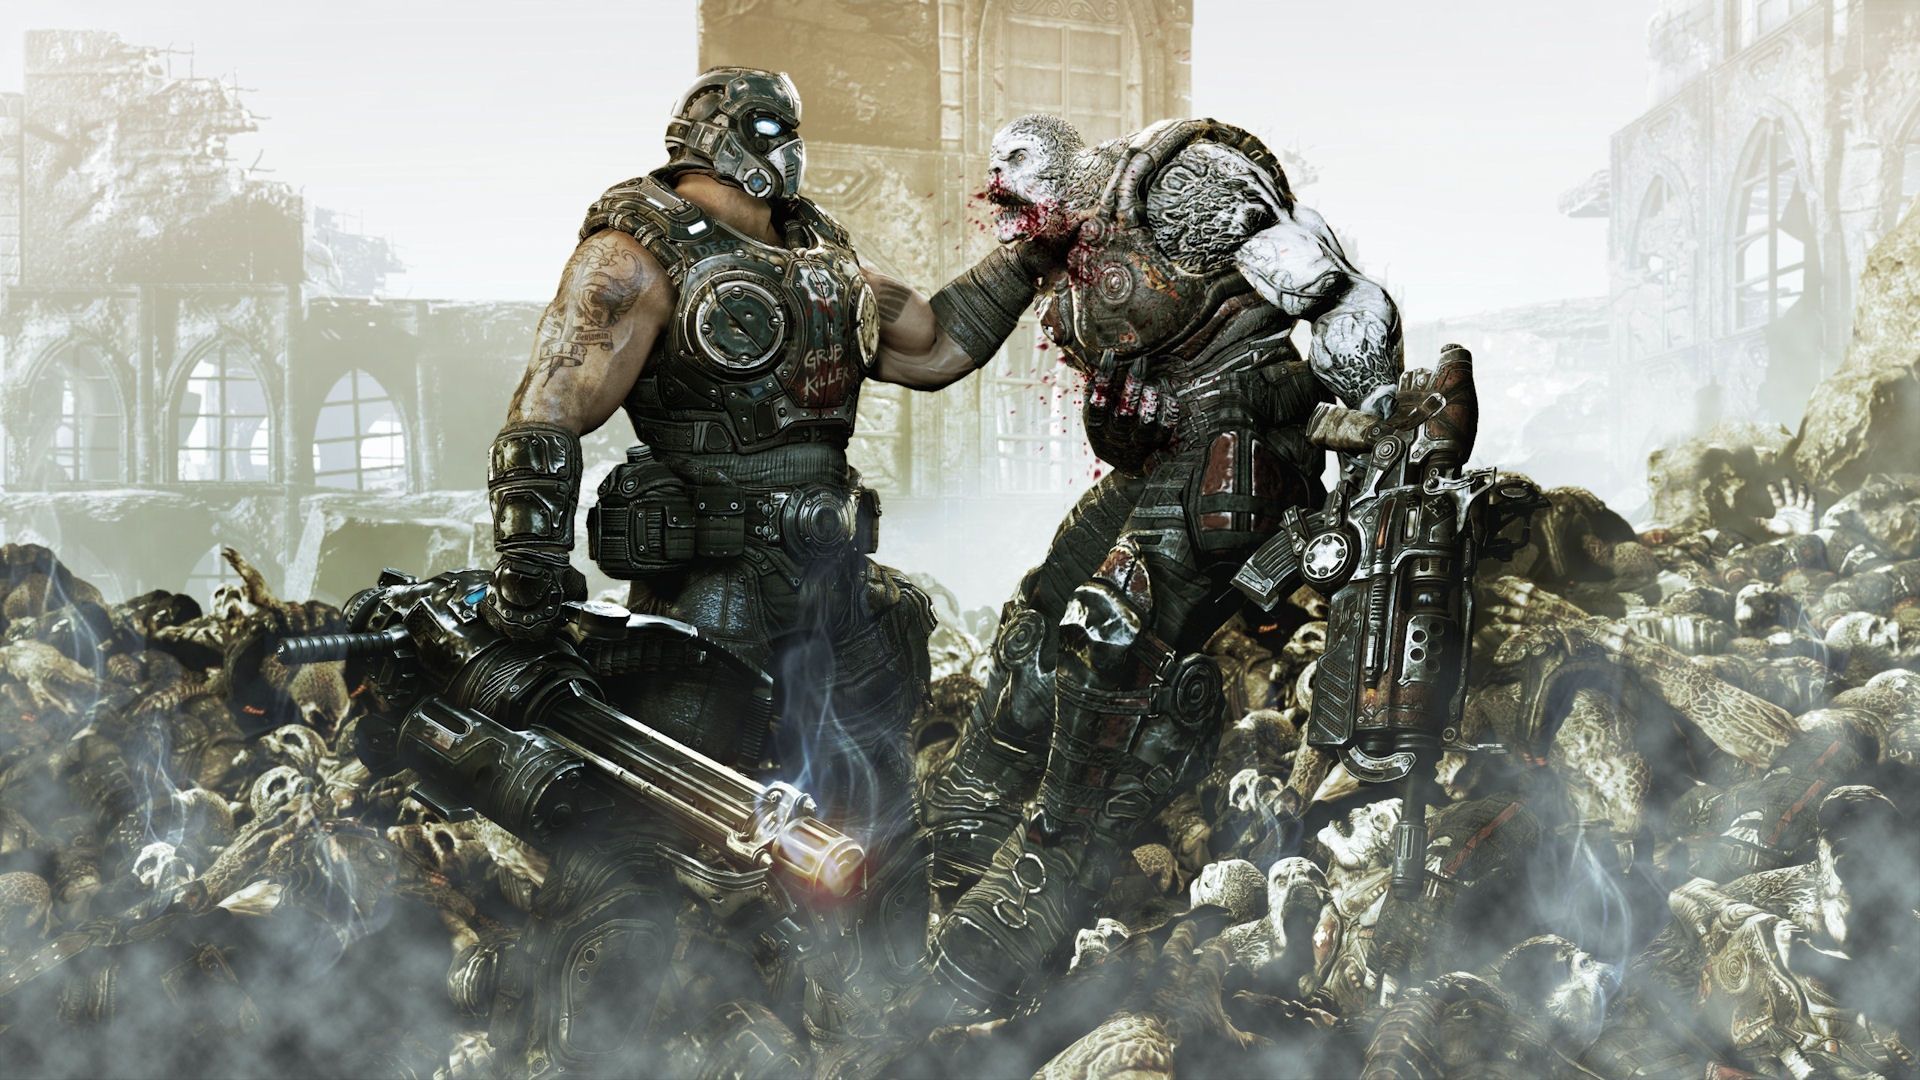 Gears Of War 4 Carmine - wallpaper.